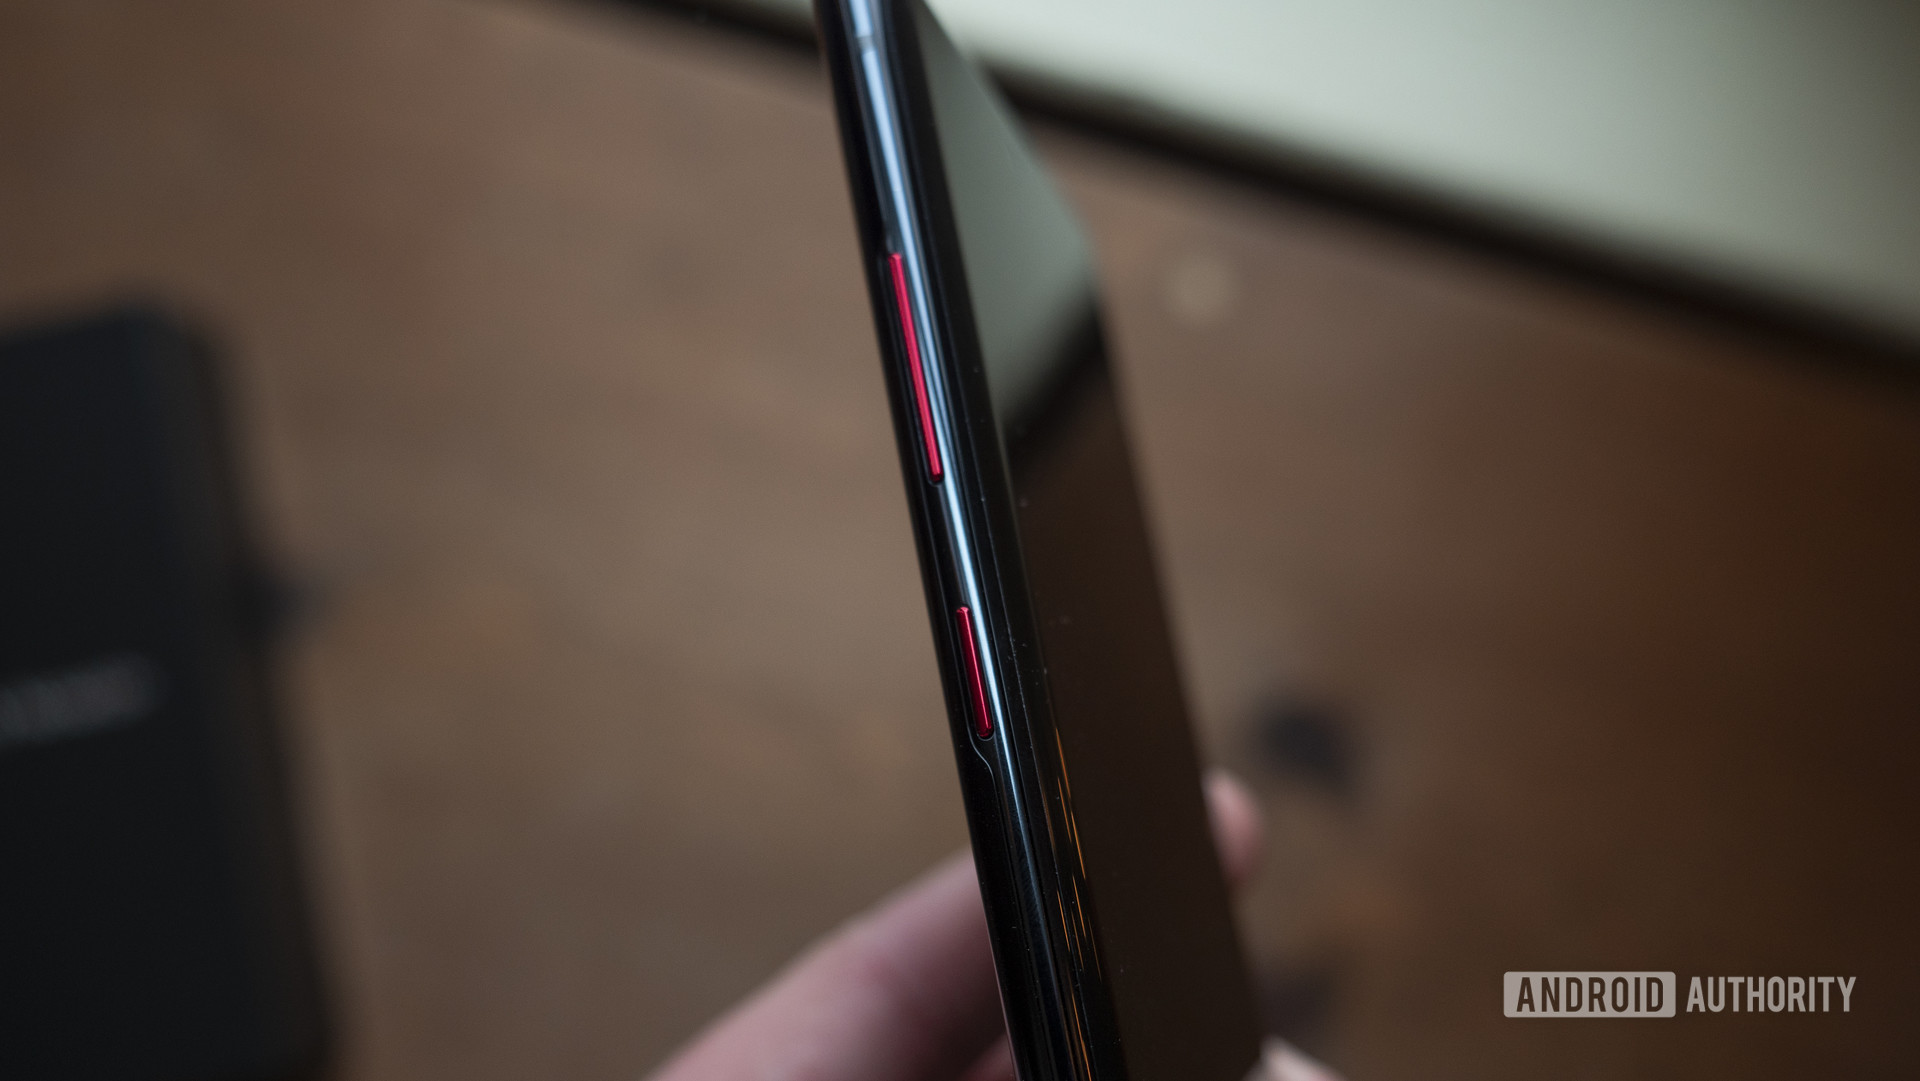 Chia sẻ một số hình ảnh cận cảnh phiên bản
Galaxy Note 10+ Star Wars Edition